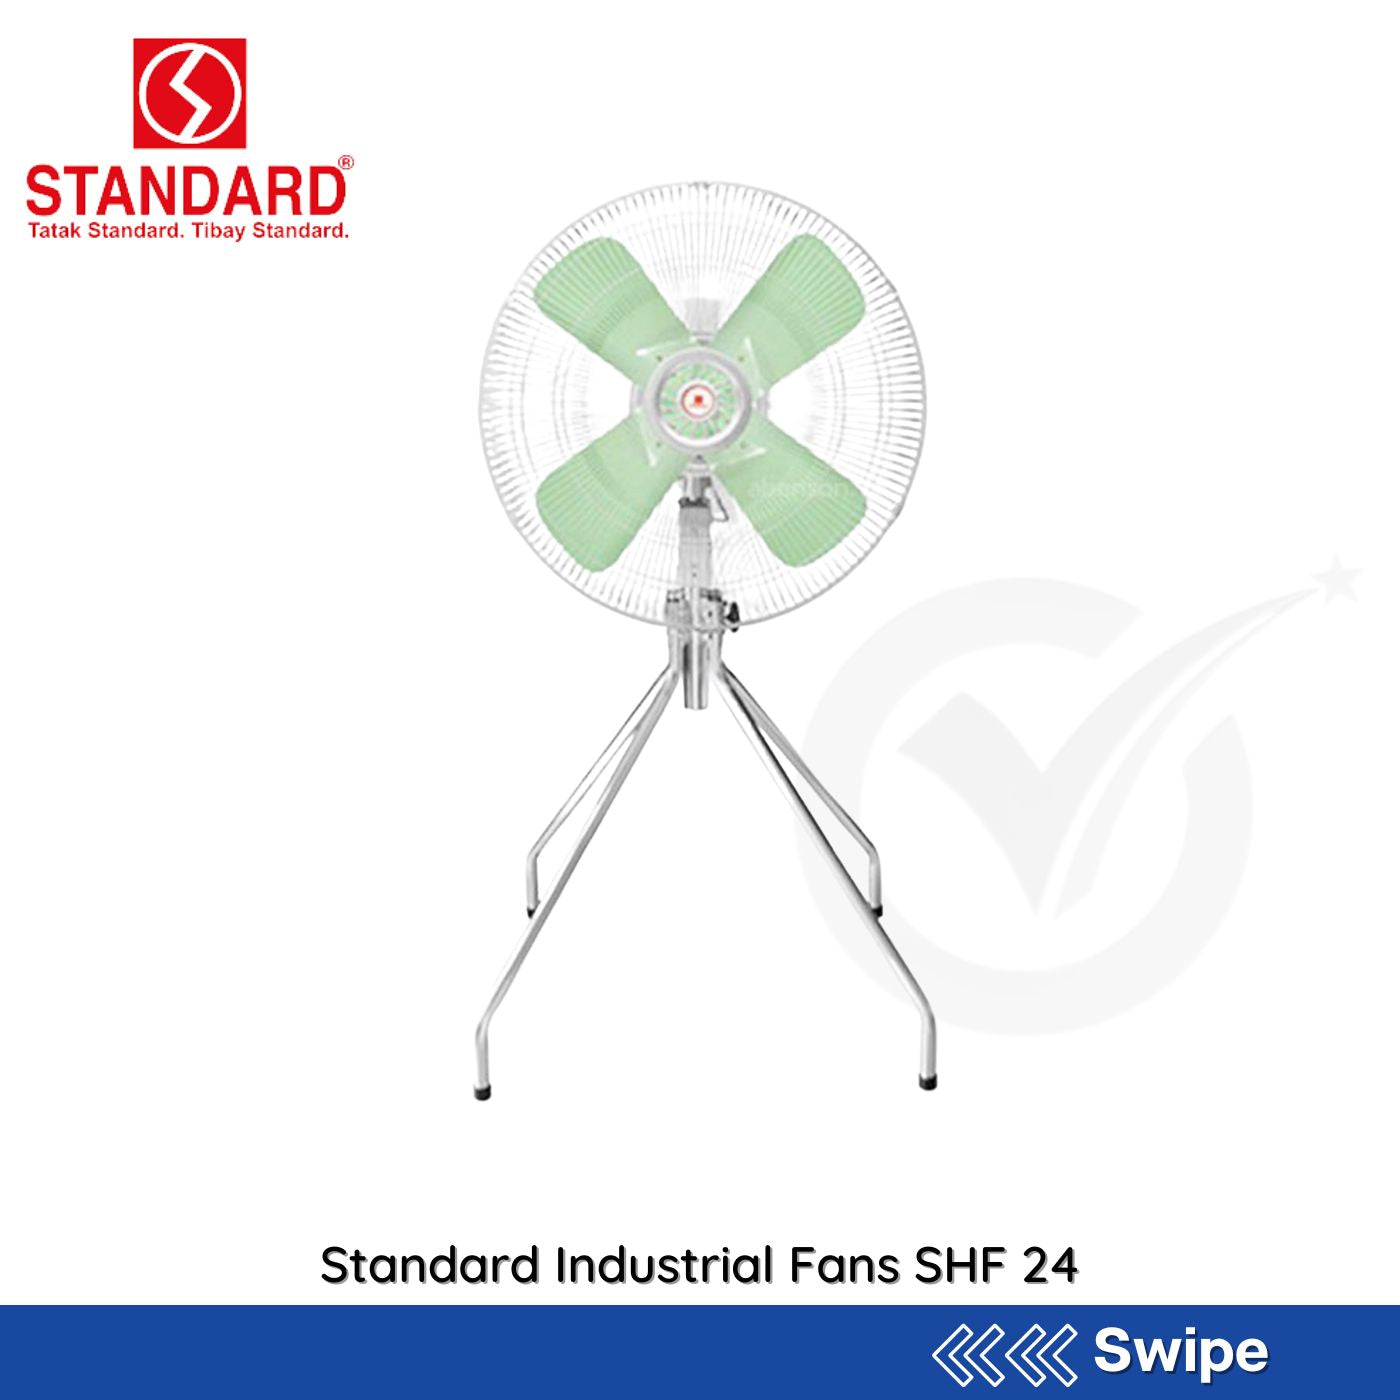 Standard Industrial Fans SHF 24